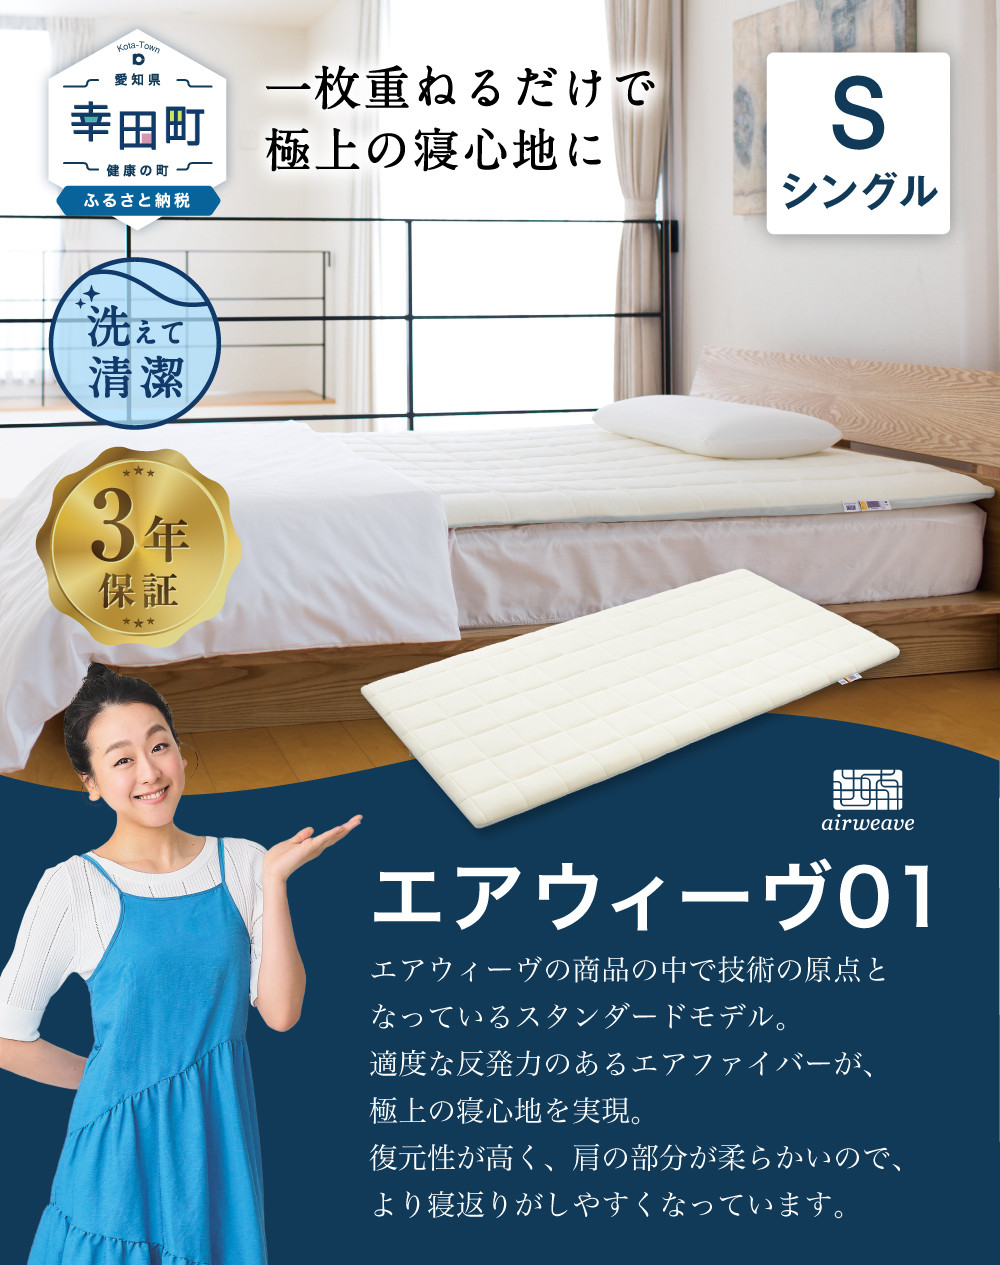 エアウィーヴ01 シングル マットレスパッド 洗えて清潔 - 愛知県幸田町 